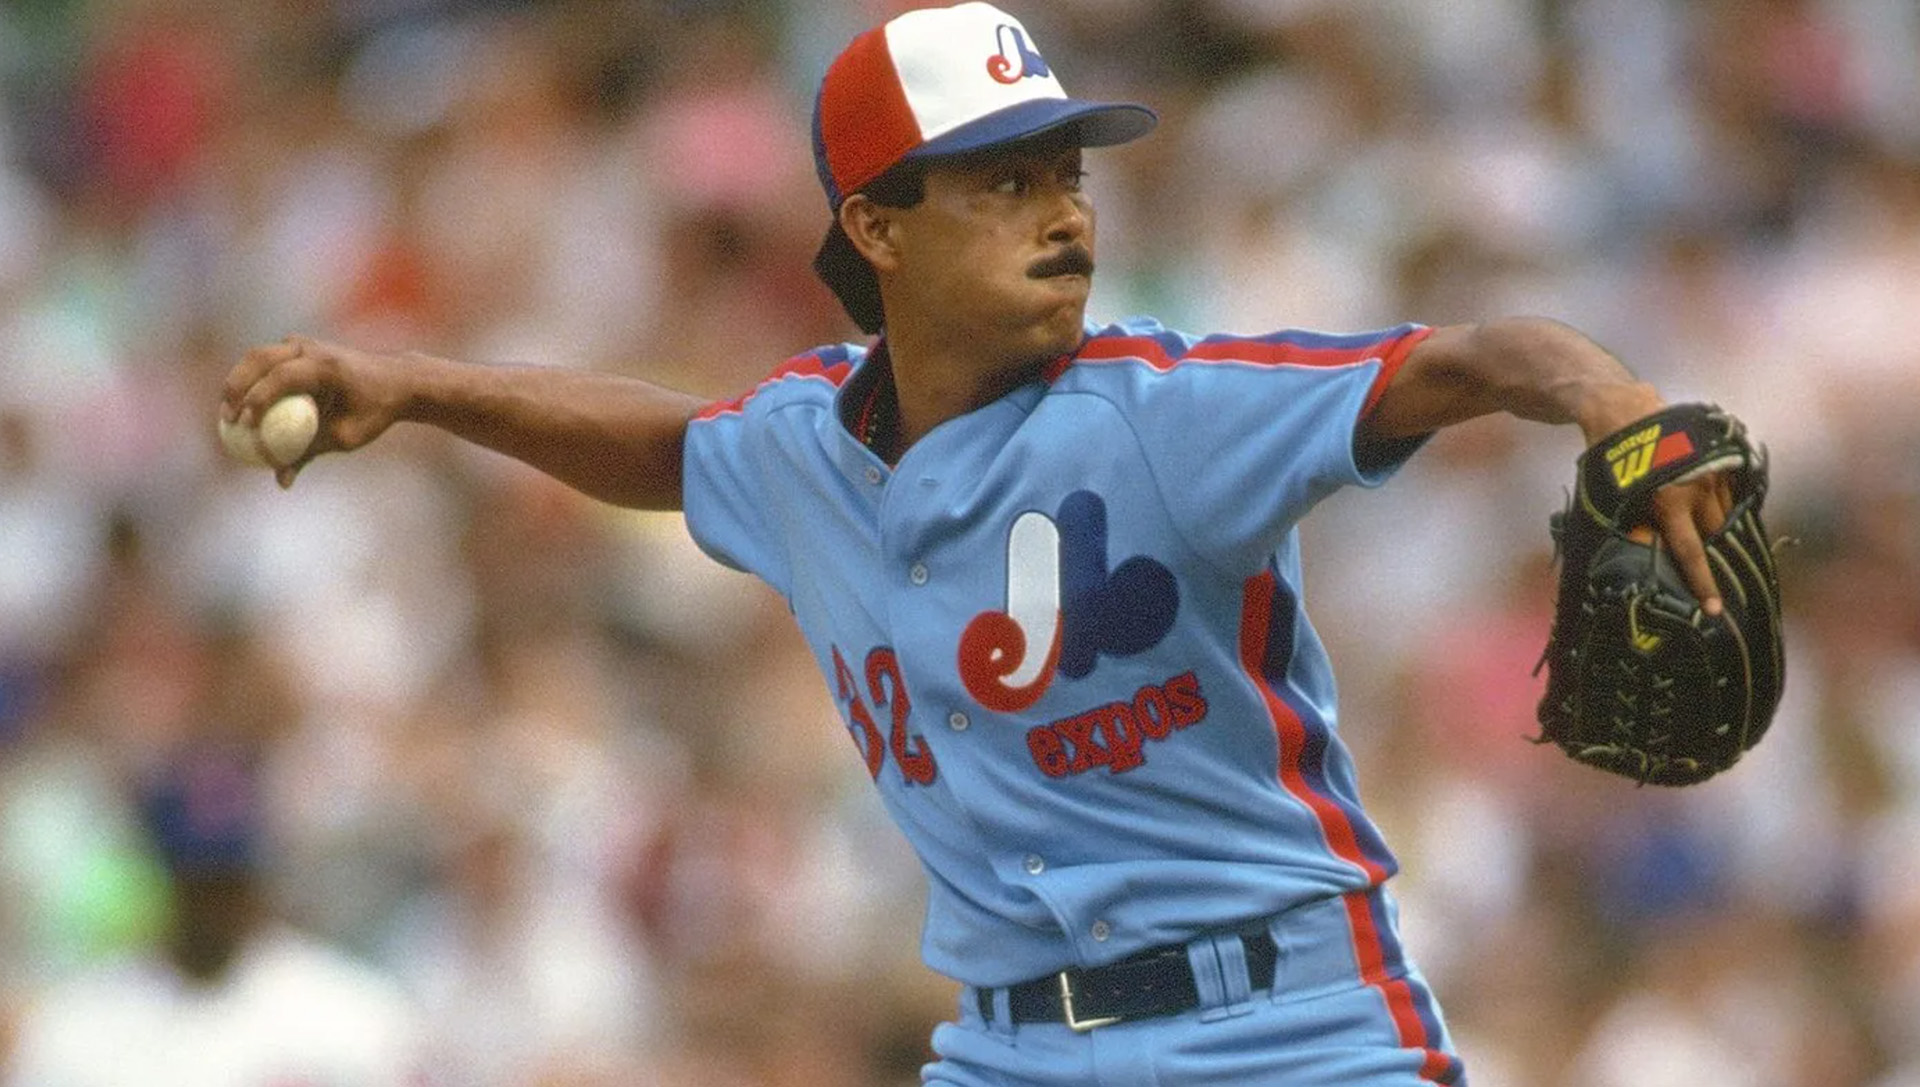 Dennis Martínez es el mejor jugador de beisbol que ha tenido Nicaragua en su historia deportiva.